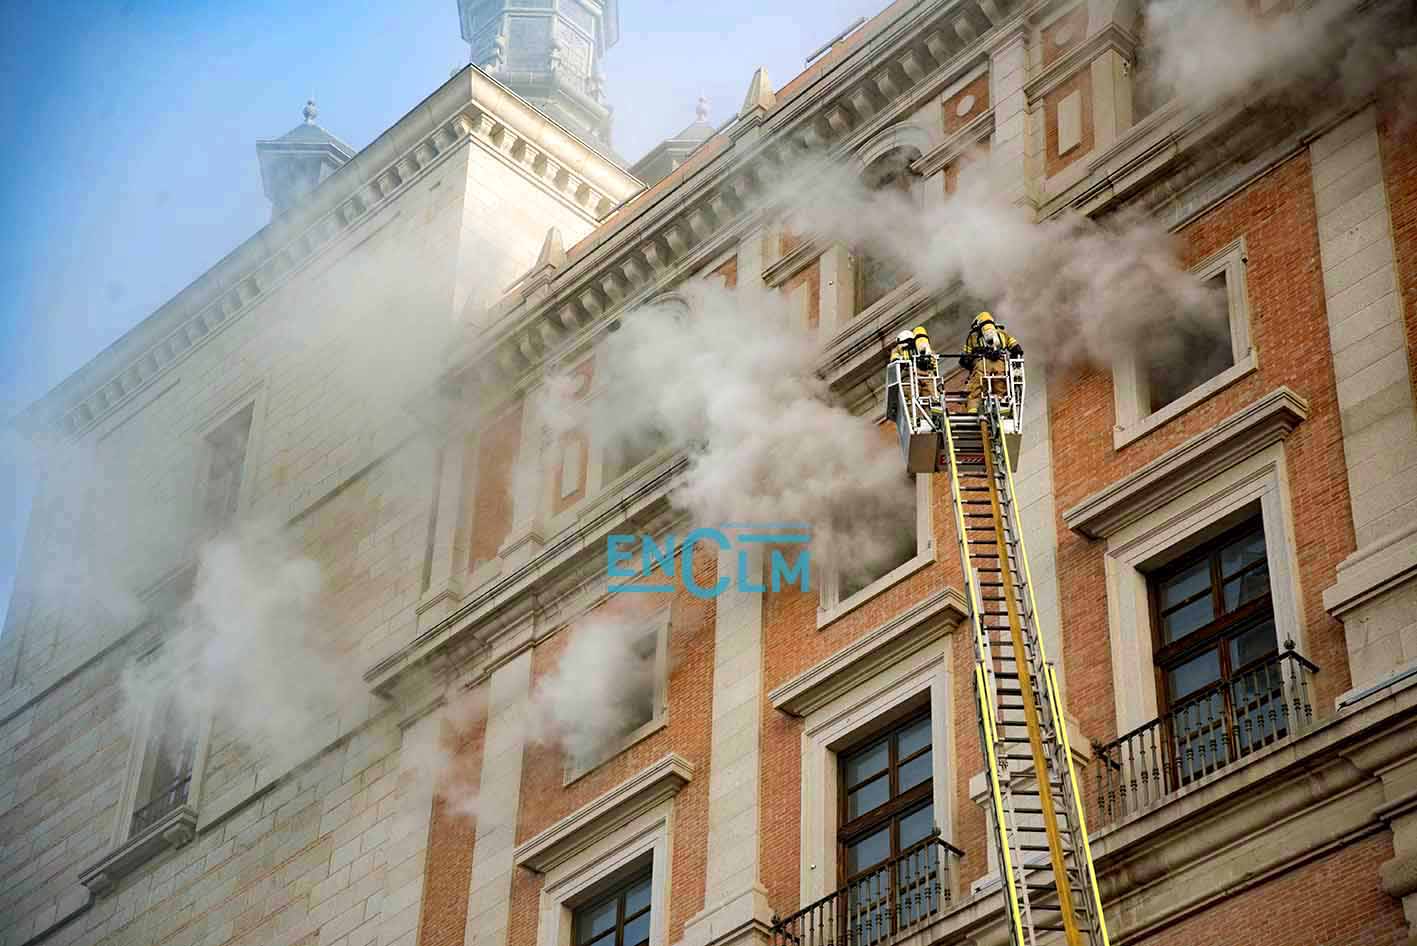 Tremendo susto el lunes al incendiarse un cuadro eléctrico en el Alcázar de Toledo. Foto: Rebeca Arango.